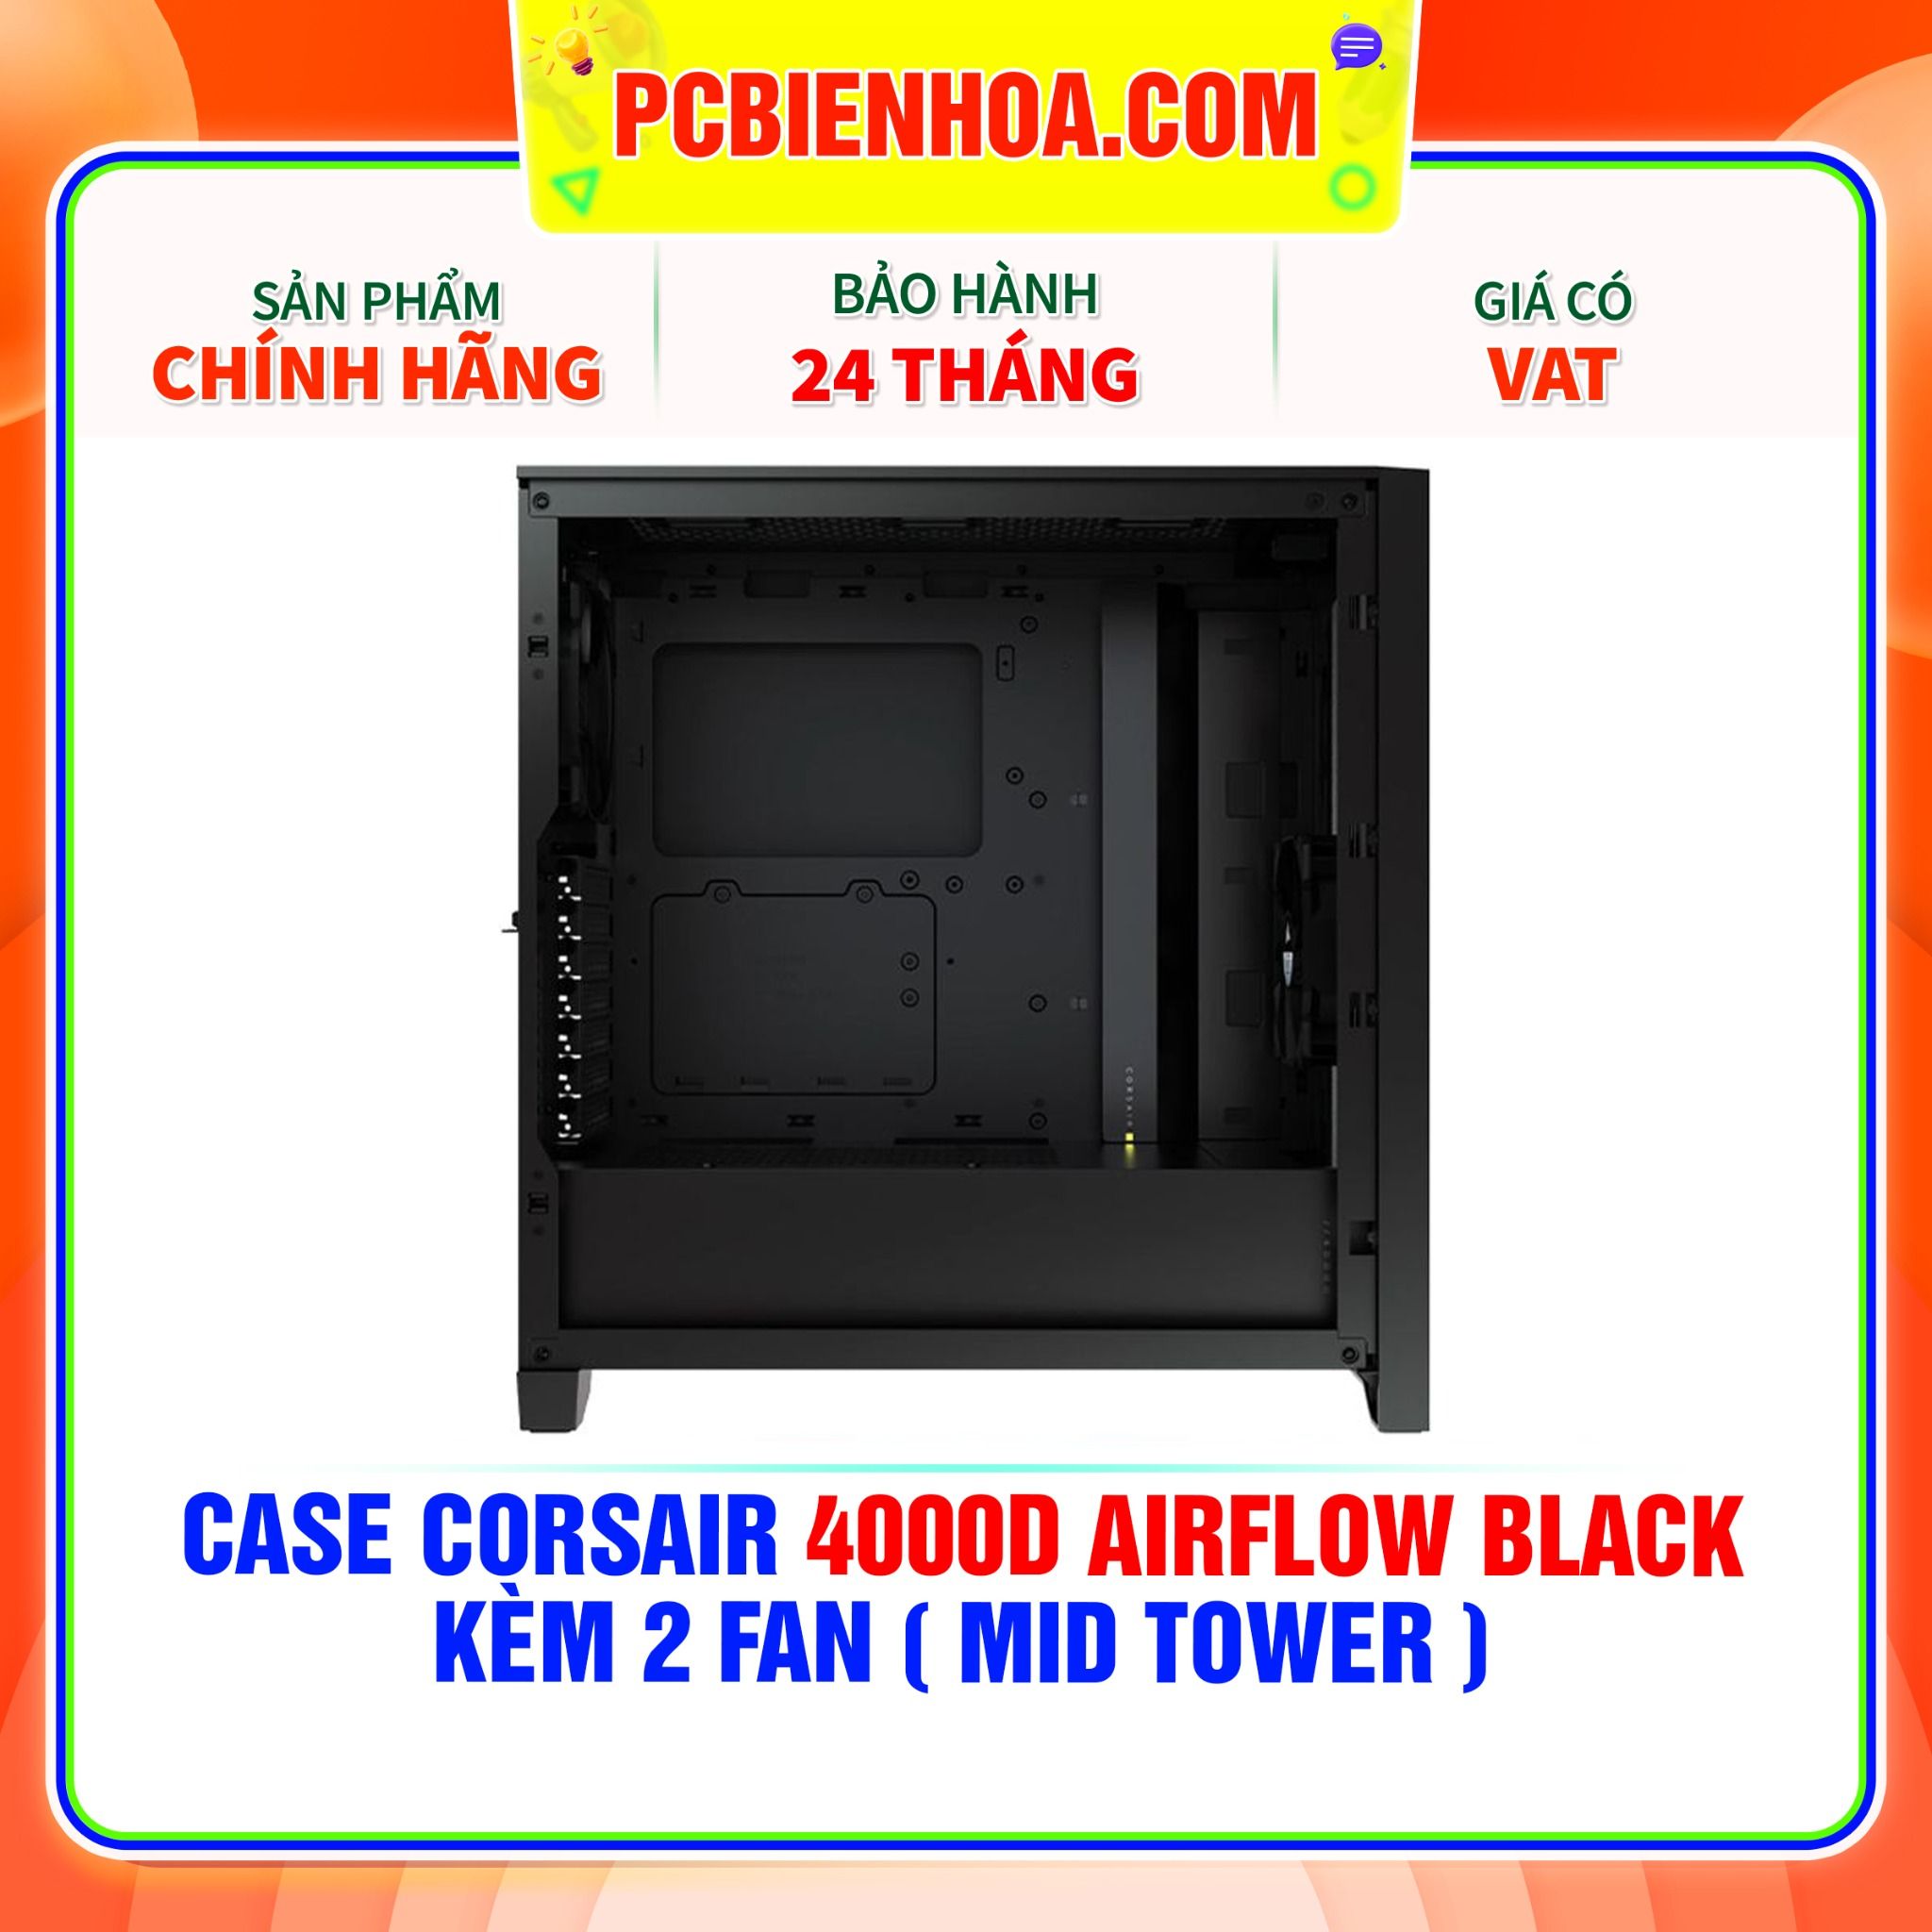  CASE CORSAIR 4000D AIRFLOW BLACK - KÈM 2 FAN ( MID TOWER ) 